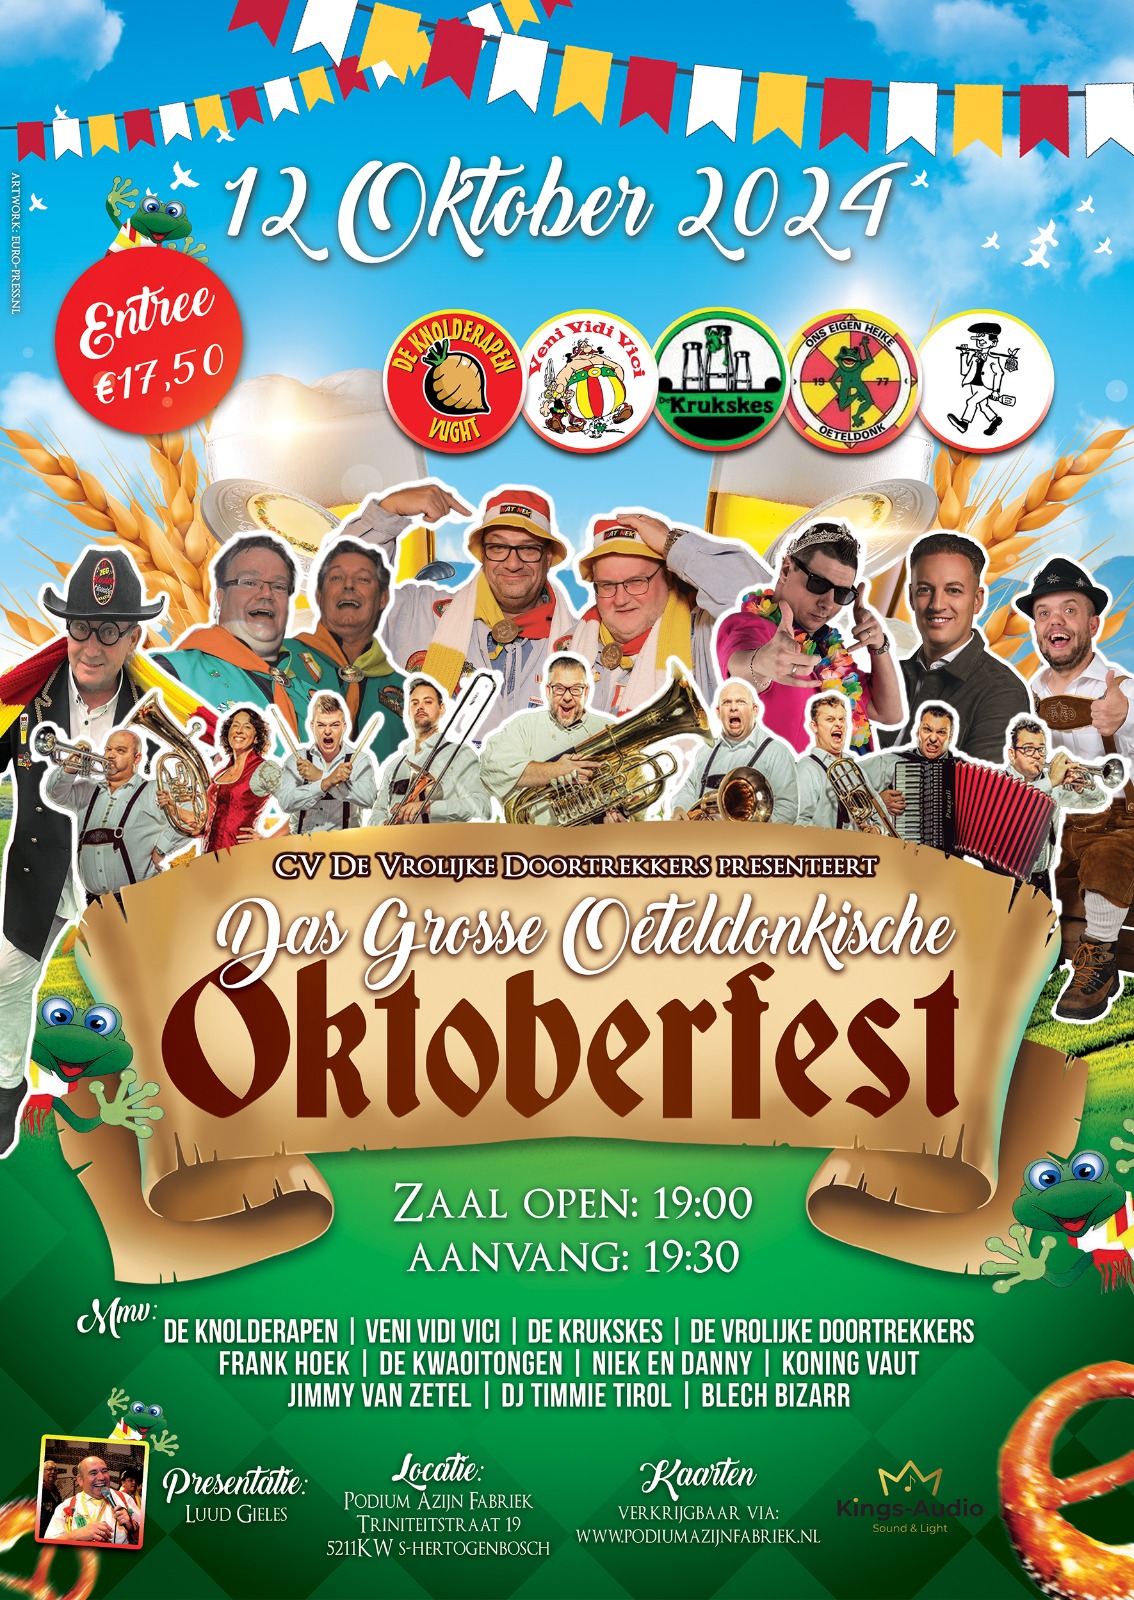 Ticket kopen voor evenement Das Grosse Oeteldonkische Oktoberfest 